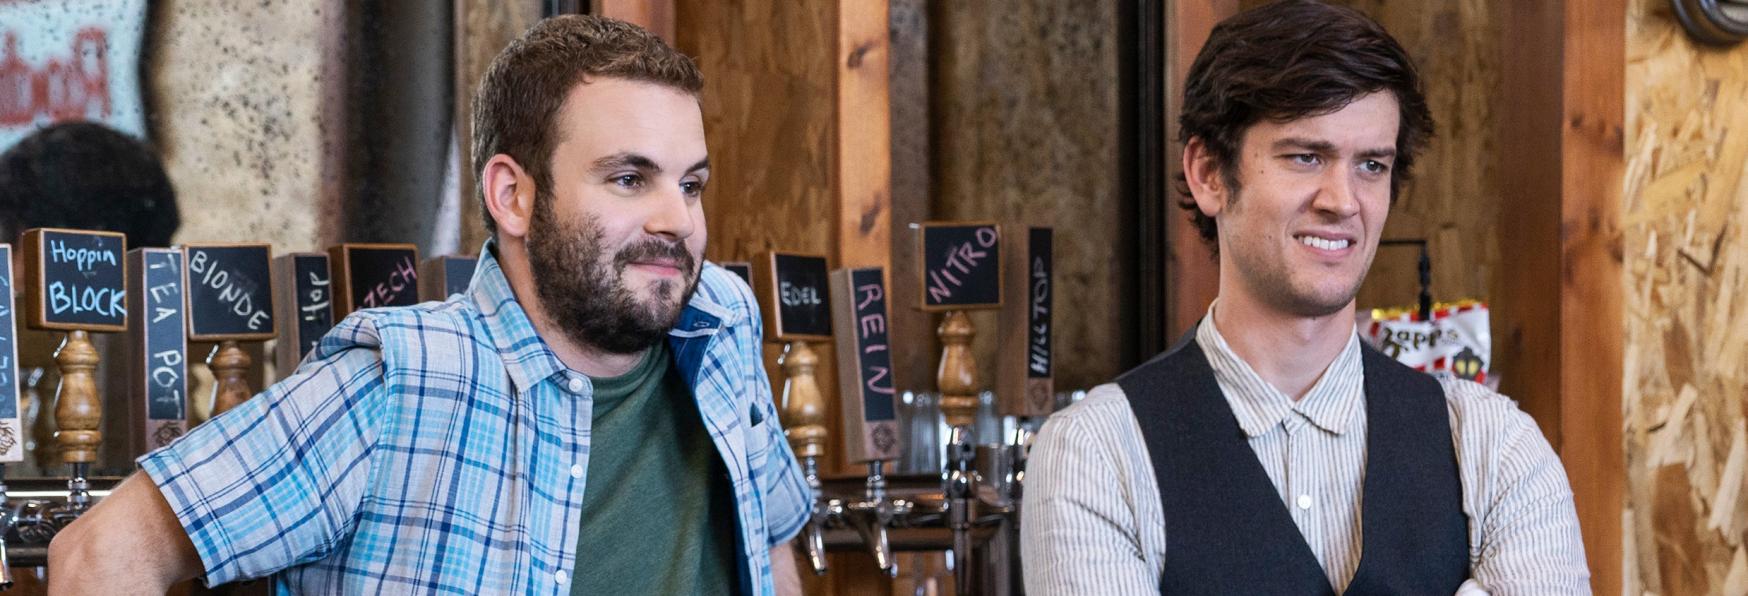 Brews Brothers: Recensione della nuova Serie TV Comedy di Netflix